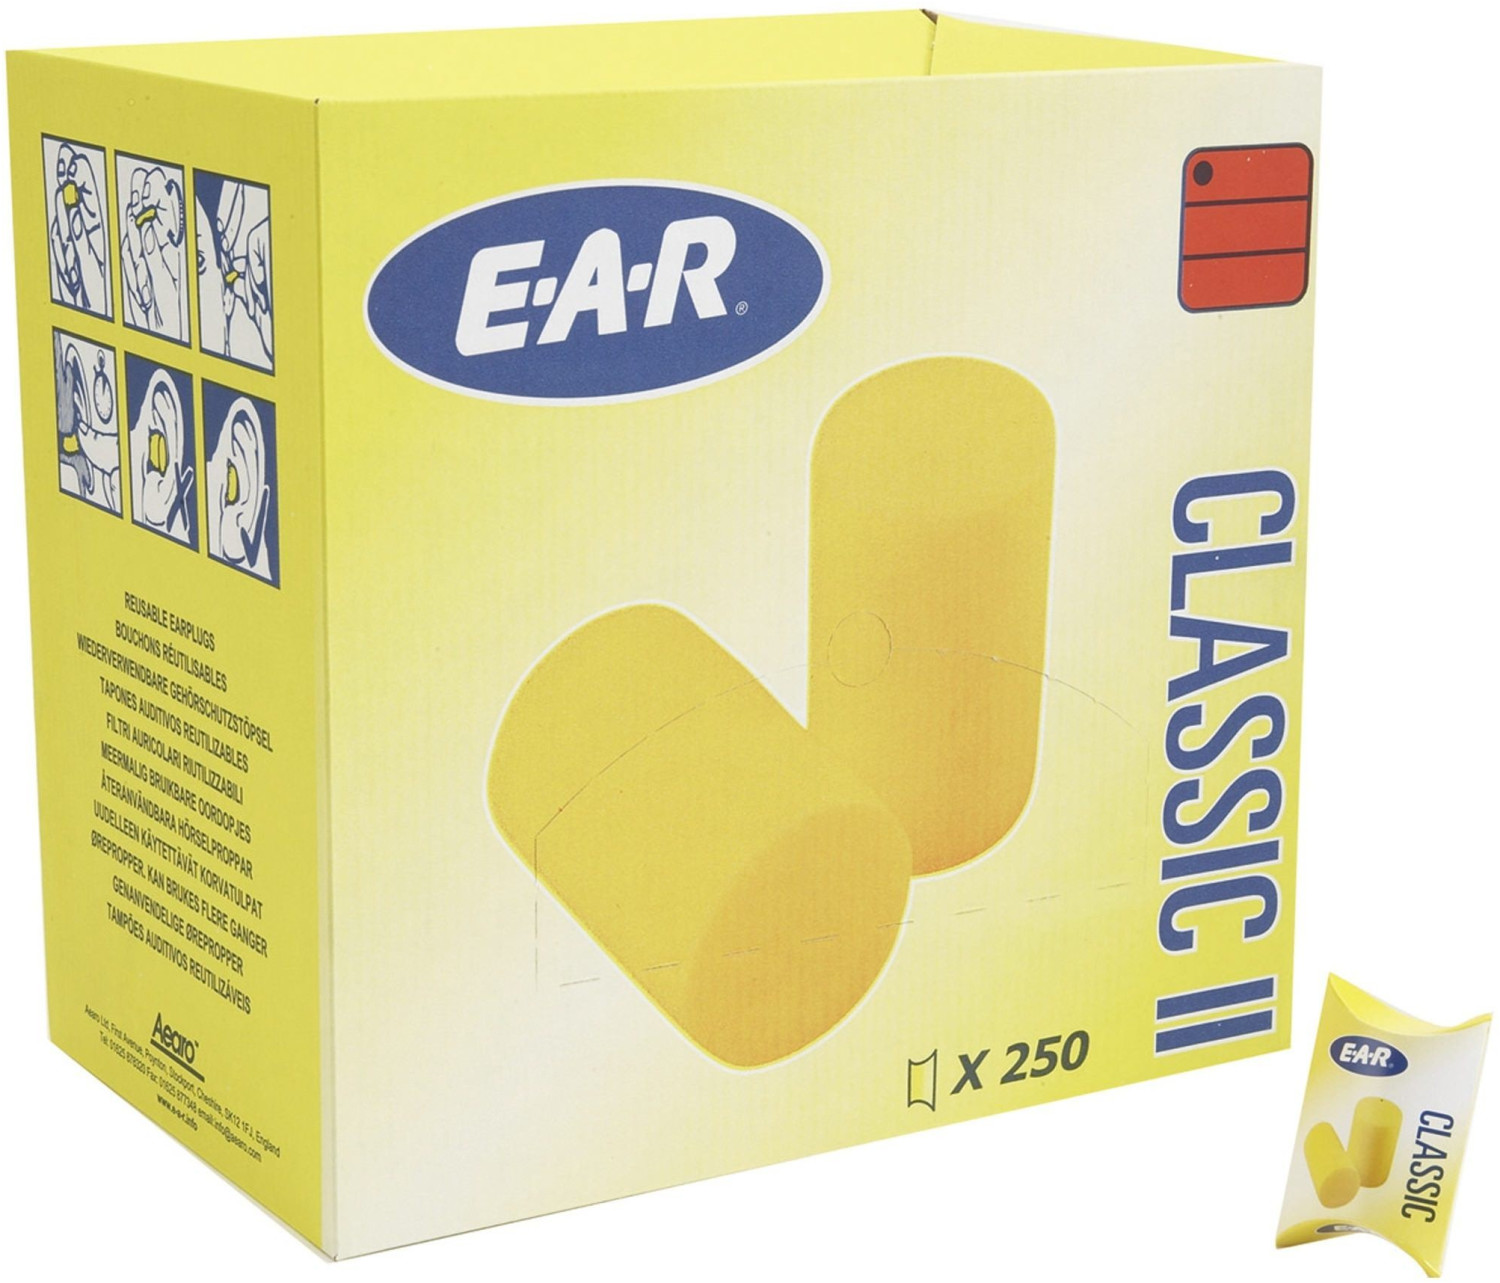 Bouchons d'oreille 3M EAR classic, boite de 4 bouchons